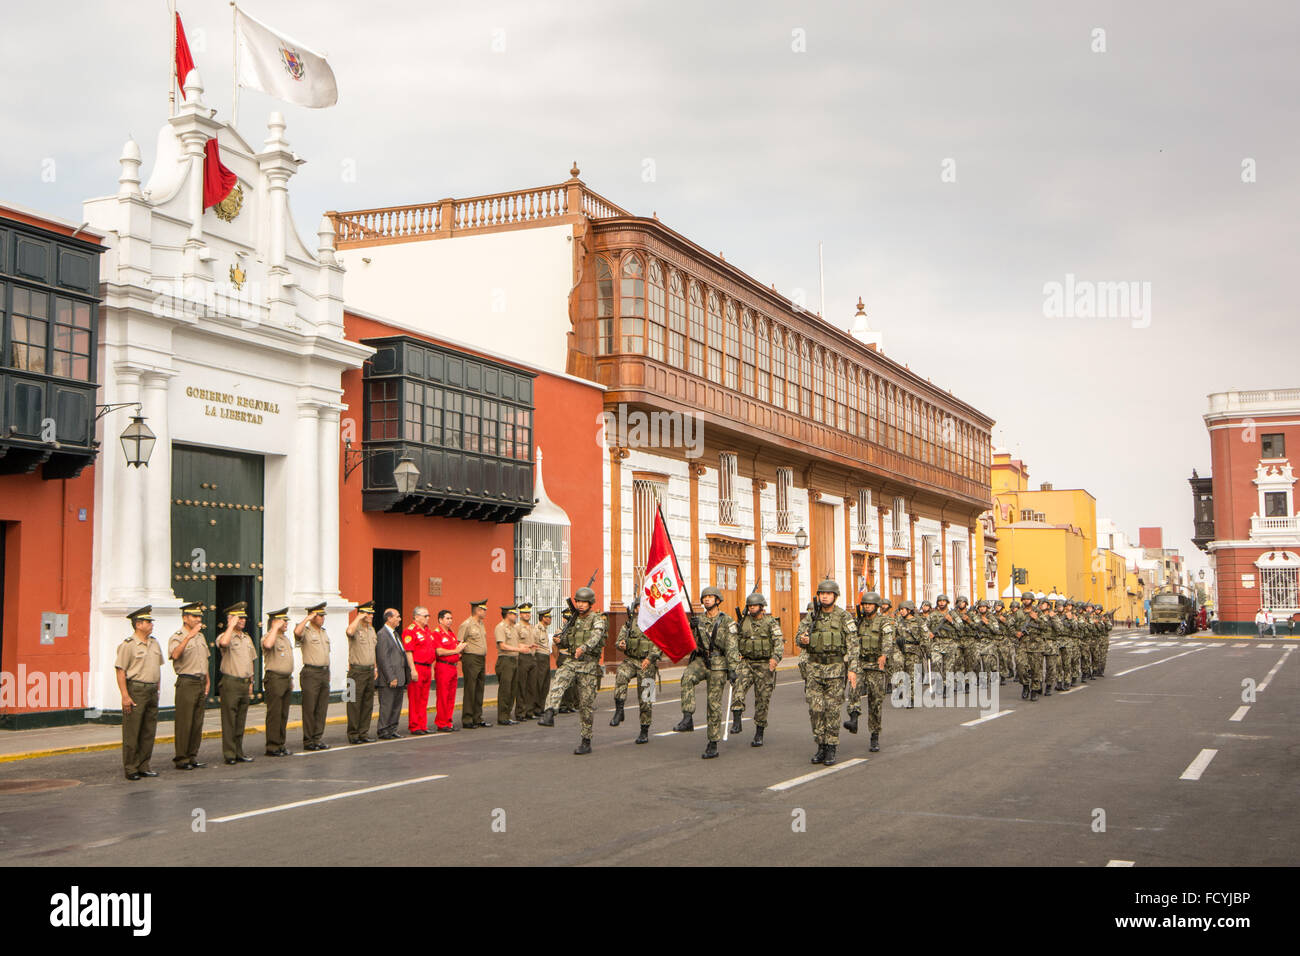 Los miembros de las Fuerzas Armadas peruanas el domingo desfile en la plaza principal de la ciudad de Trujillo en el norte del Perú Foto de stock